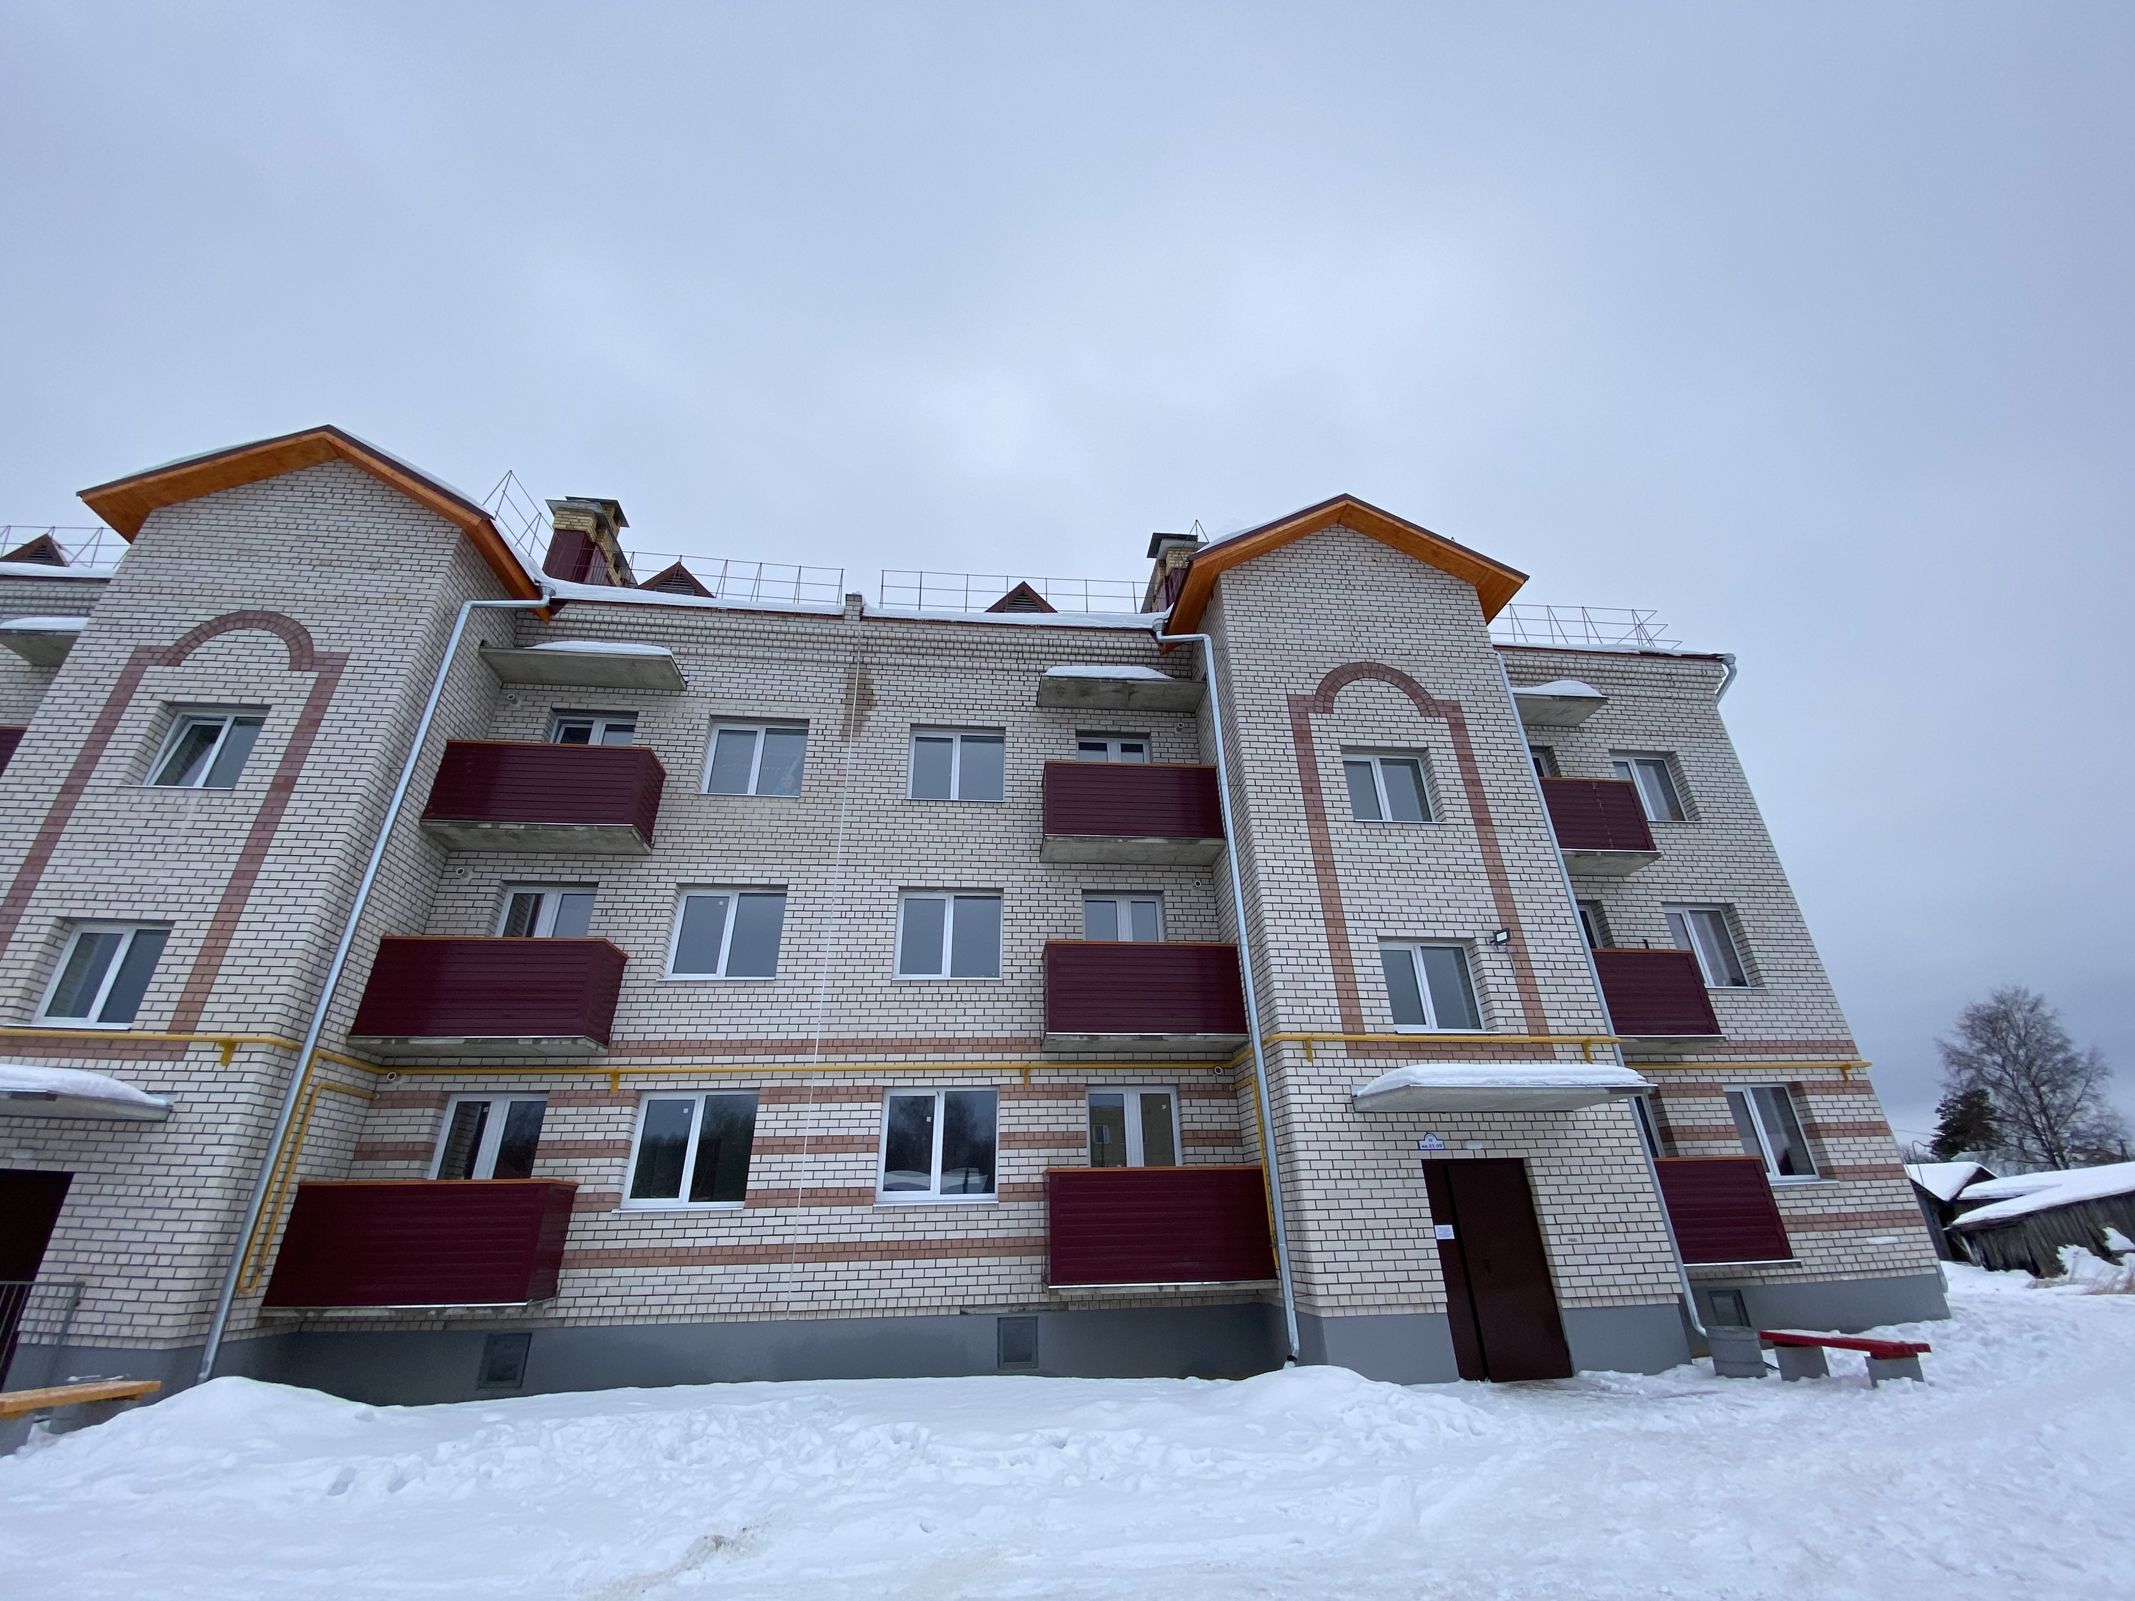 85 жителей Некоузского района переехали из аварийных домов в новостройки